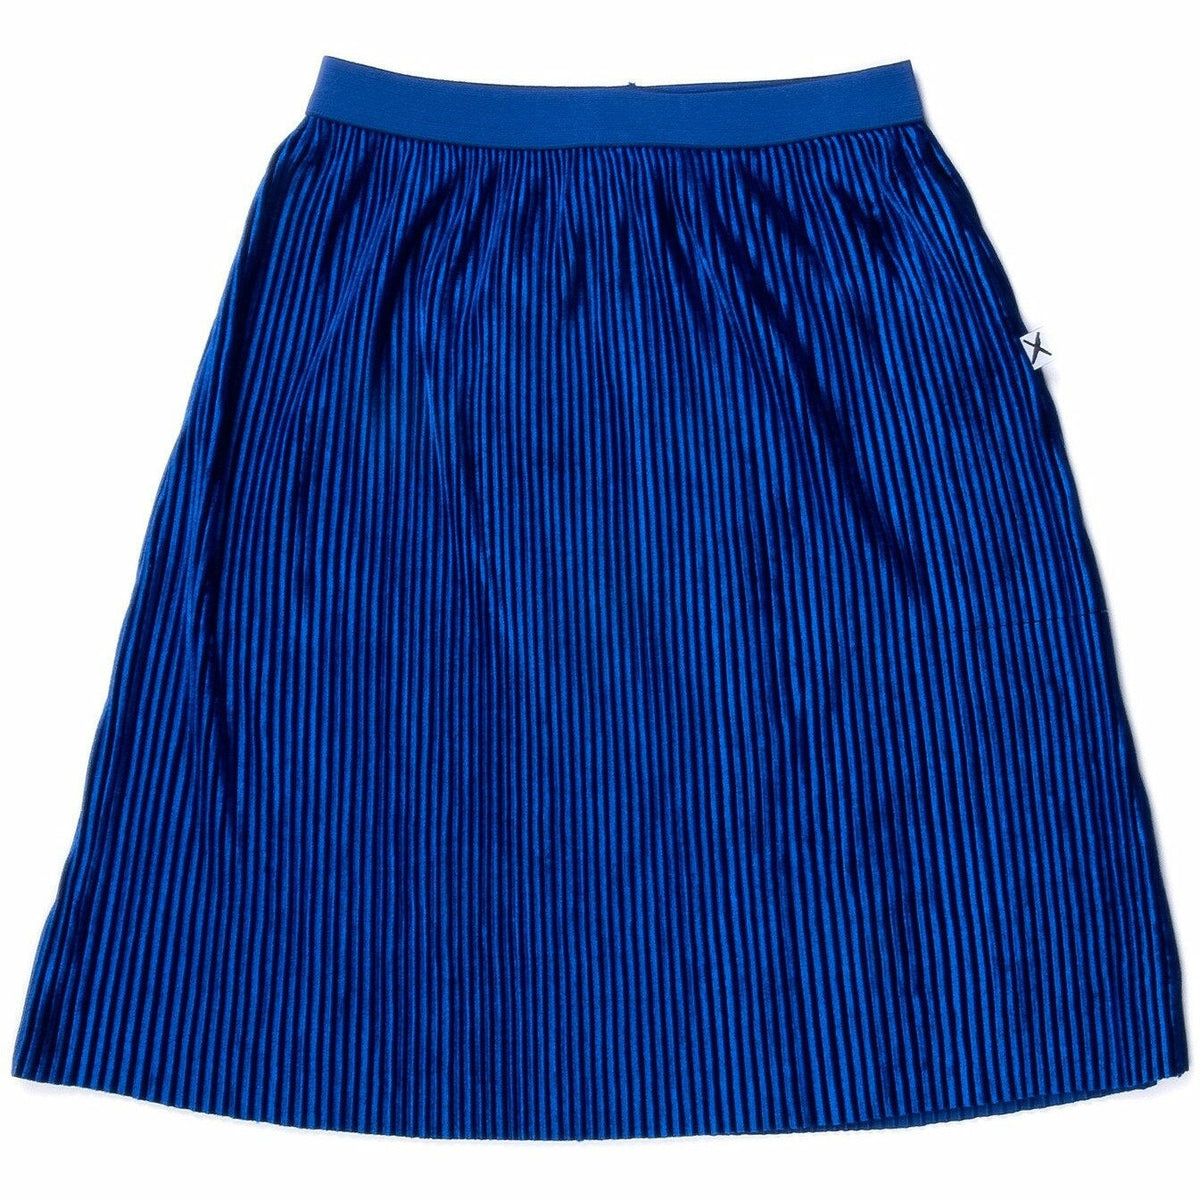 Wintery Cord Skirt - Cobalt